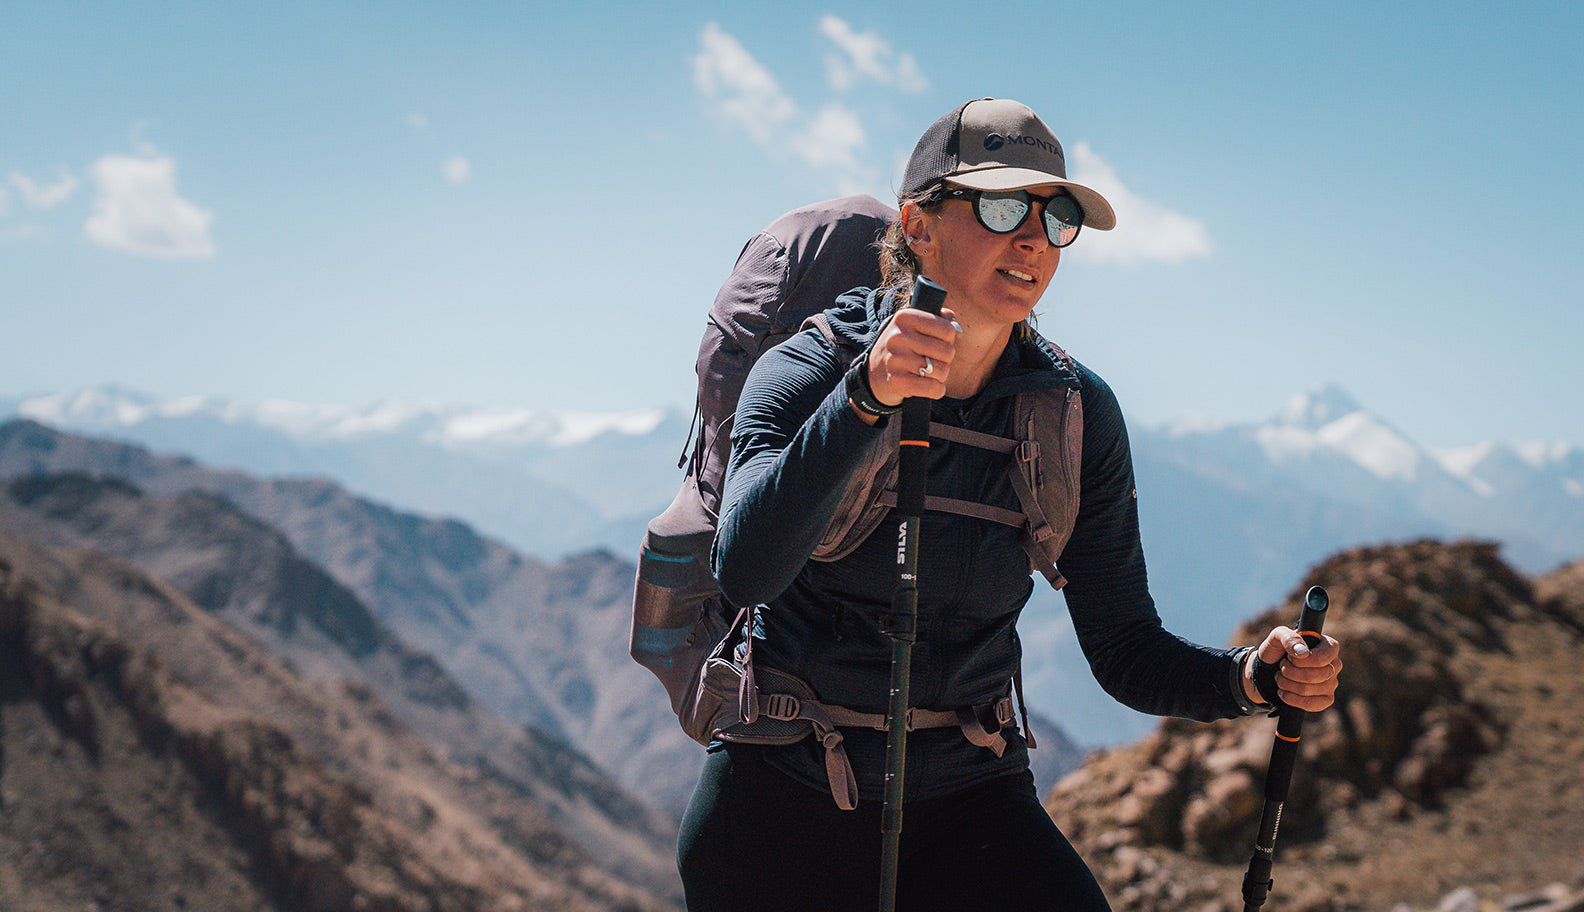 jenny-tough-trekking-in-nepal